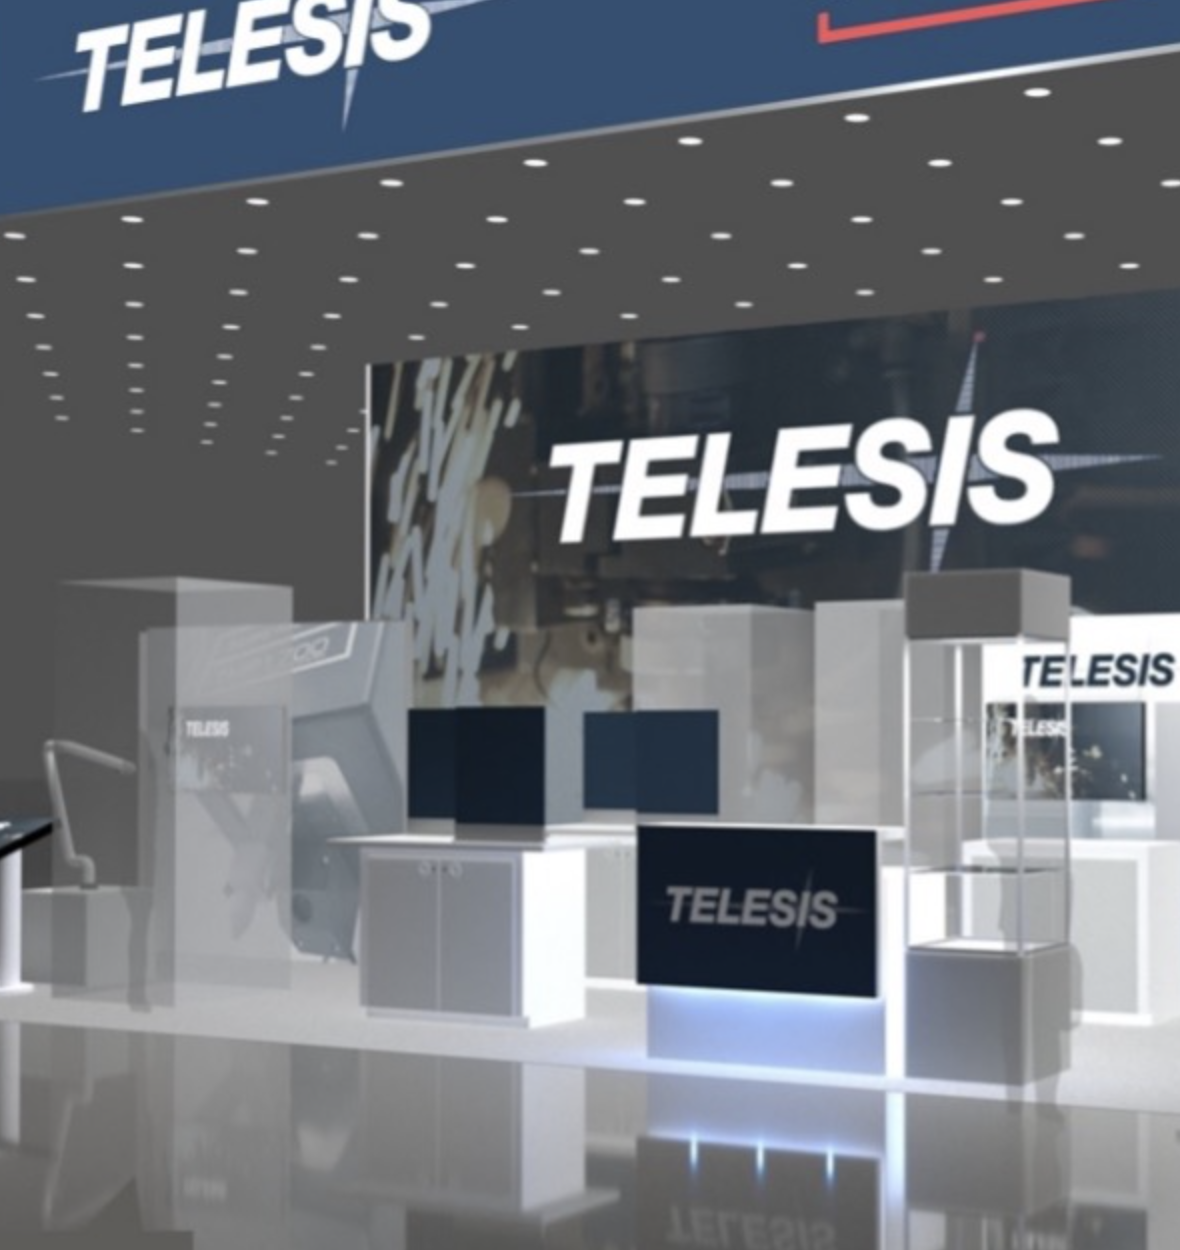 Telesis displays